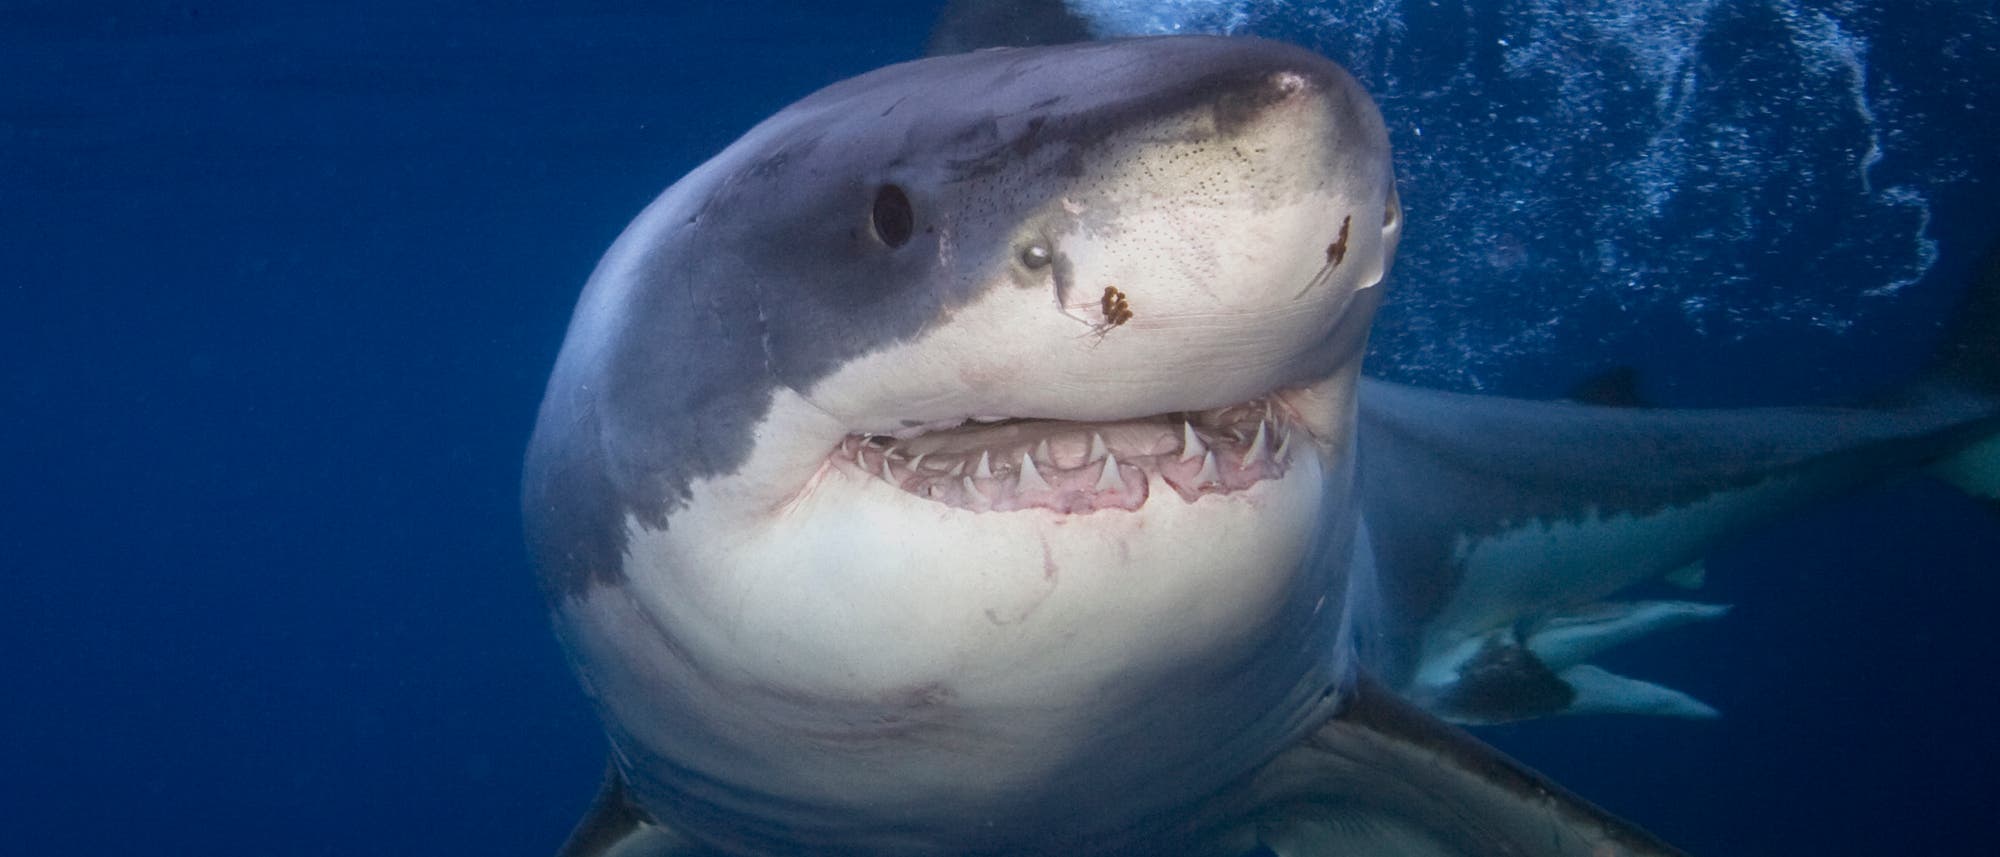 Dieser Weiße Hai ist noch wach und lächelt in die Kamera